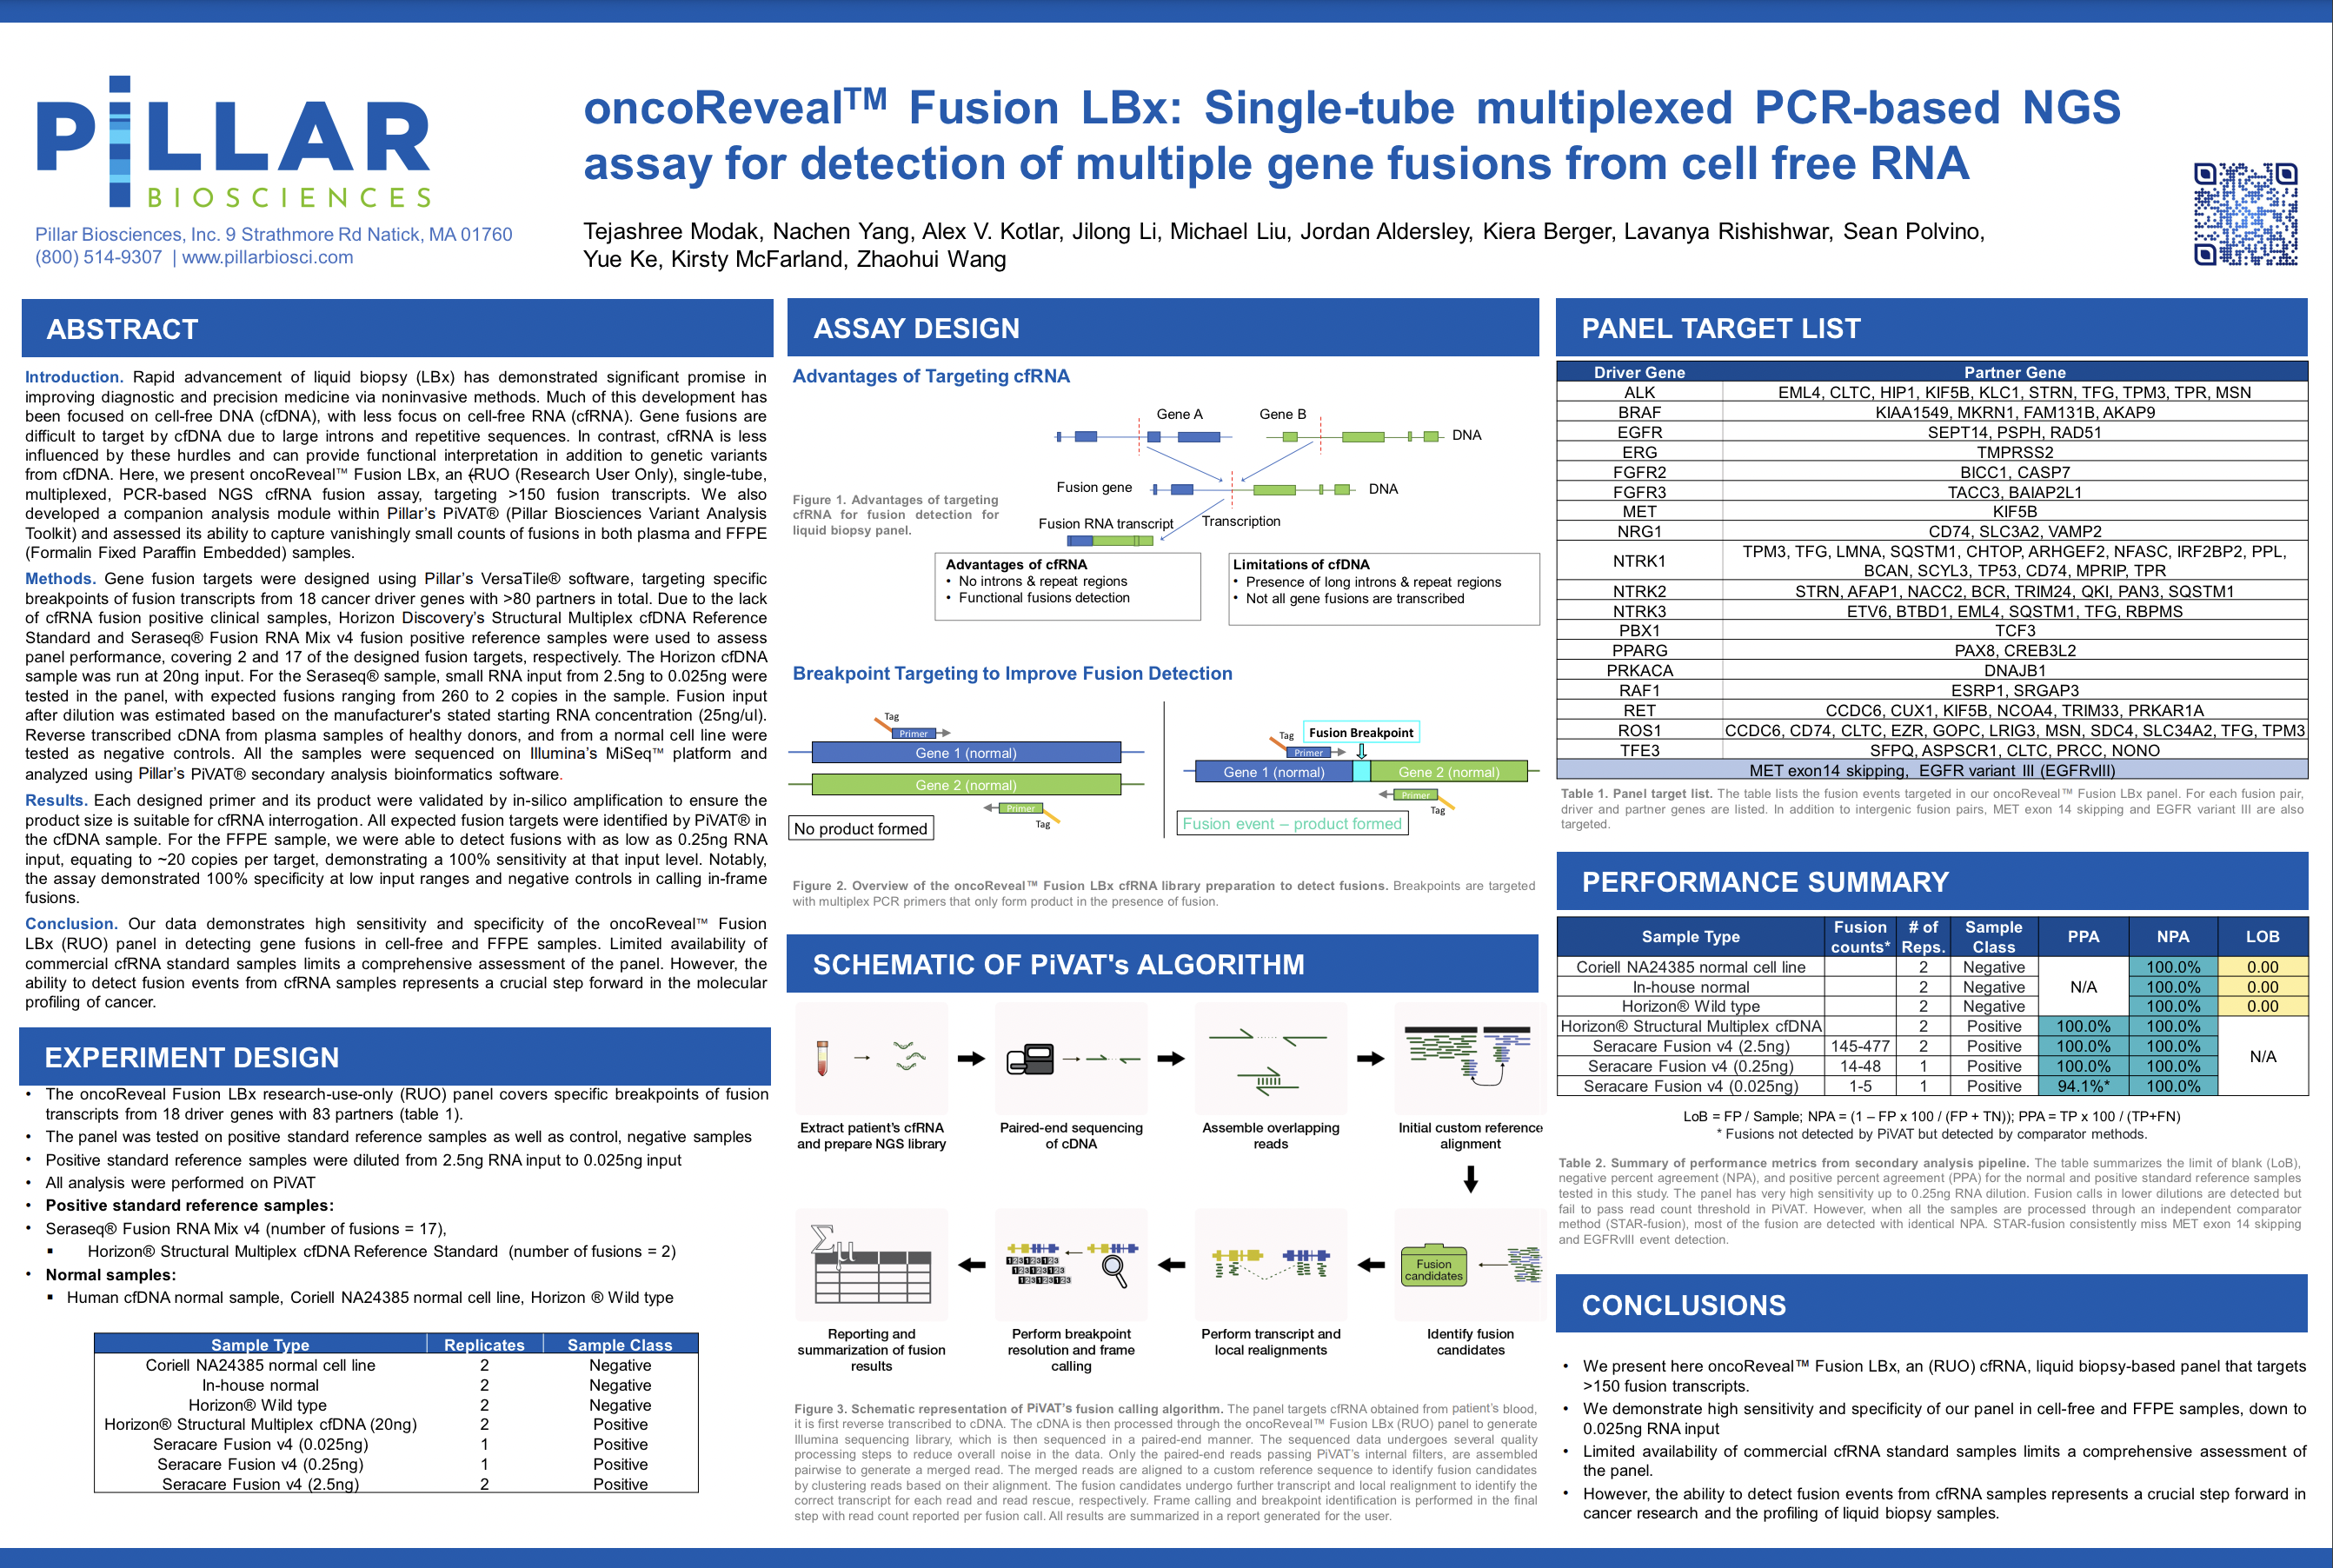 2023 AMP Modak et al oncoReveal Fusion LBx_Single-Tube Multiplexed PCR-Based NGS Assay